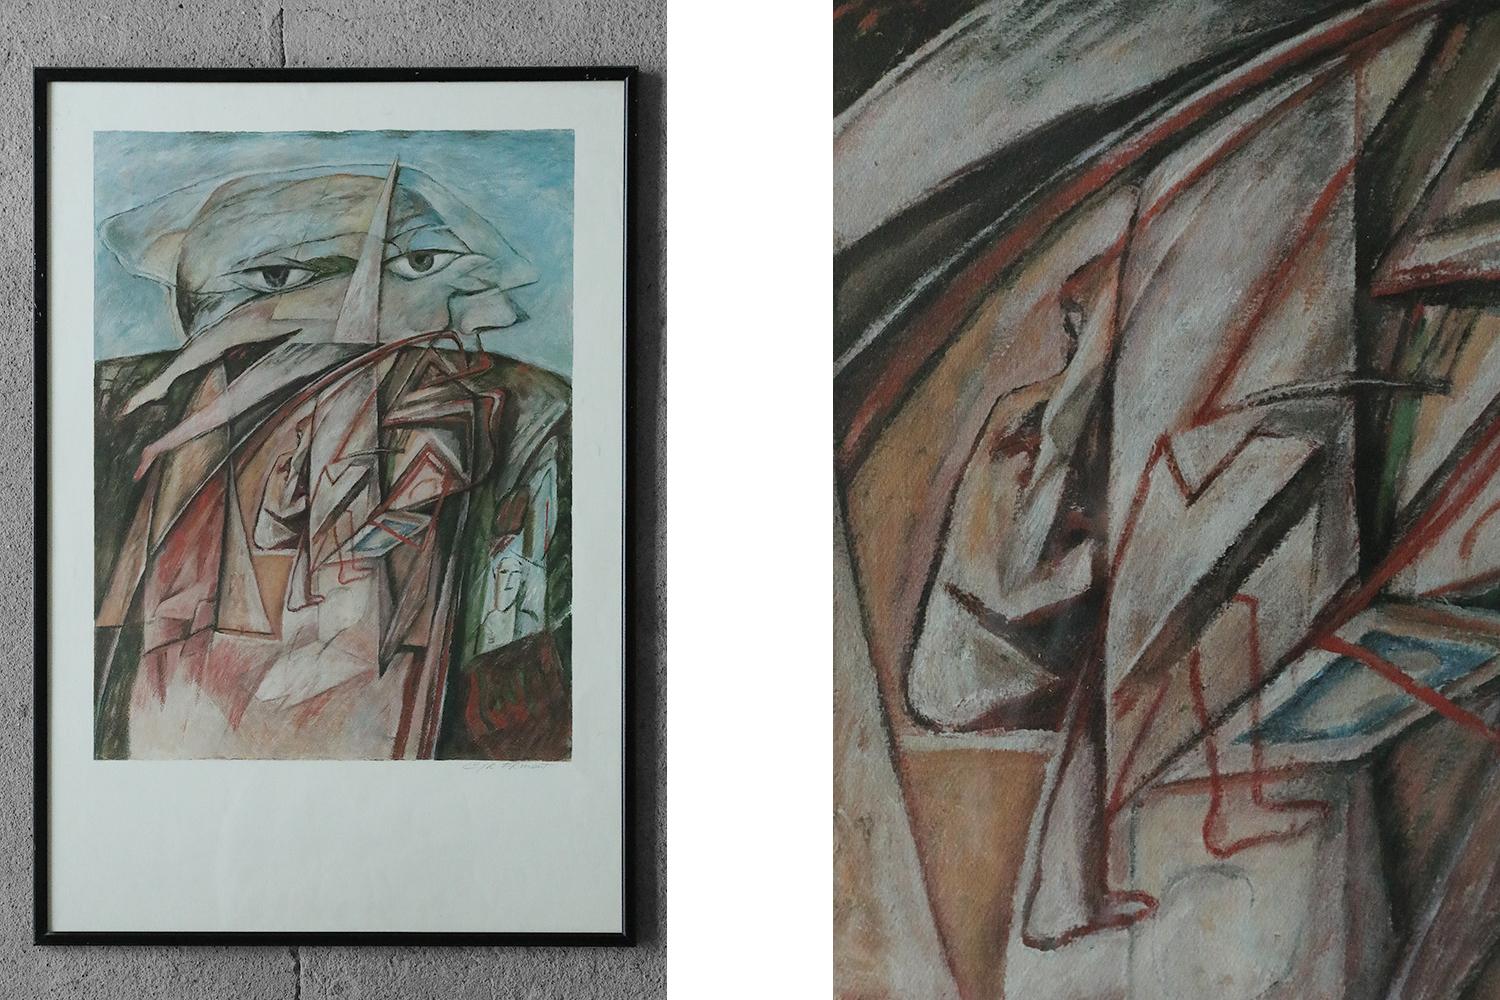 Cyr Frimout, Homme à deux têtes, 1990
Lithographie couleur
L'œuvre est signée par l'artiste (crayon)
Dimensions du travail 98/67
L'œuvre est encadrée

Cyr Frimout est né en 1938. Peintre et designer belge, il a reçu de nombreux prix. Professeur